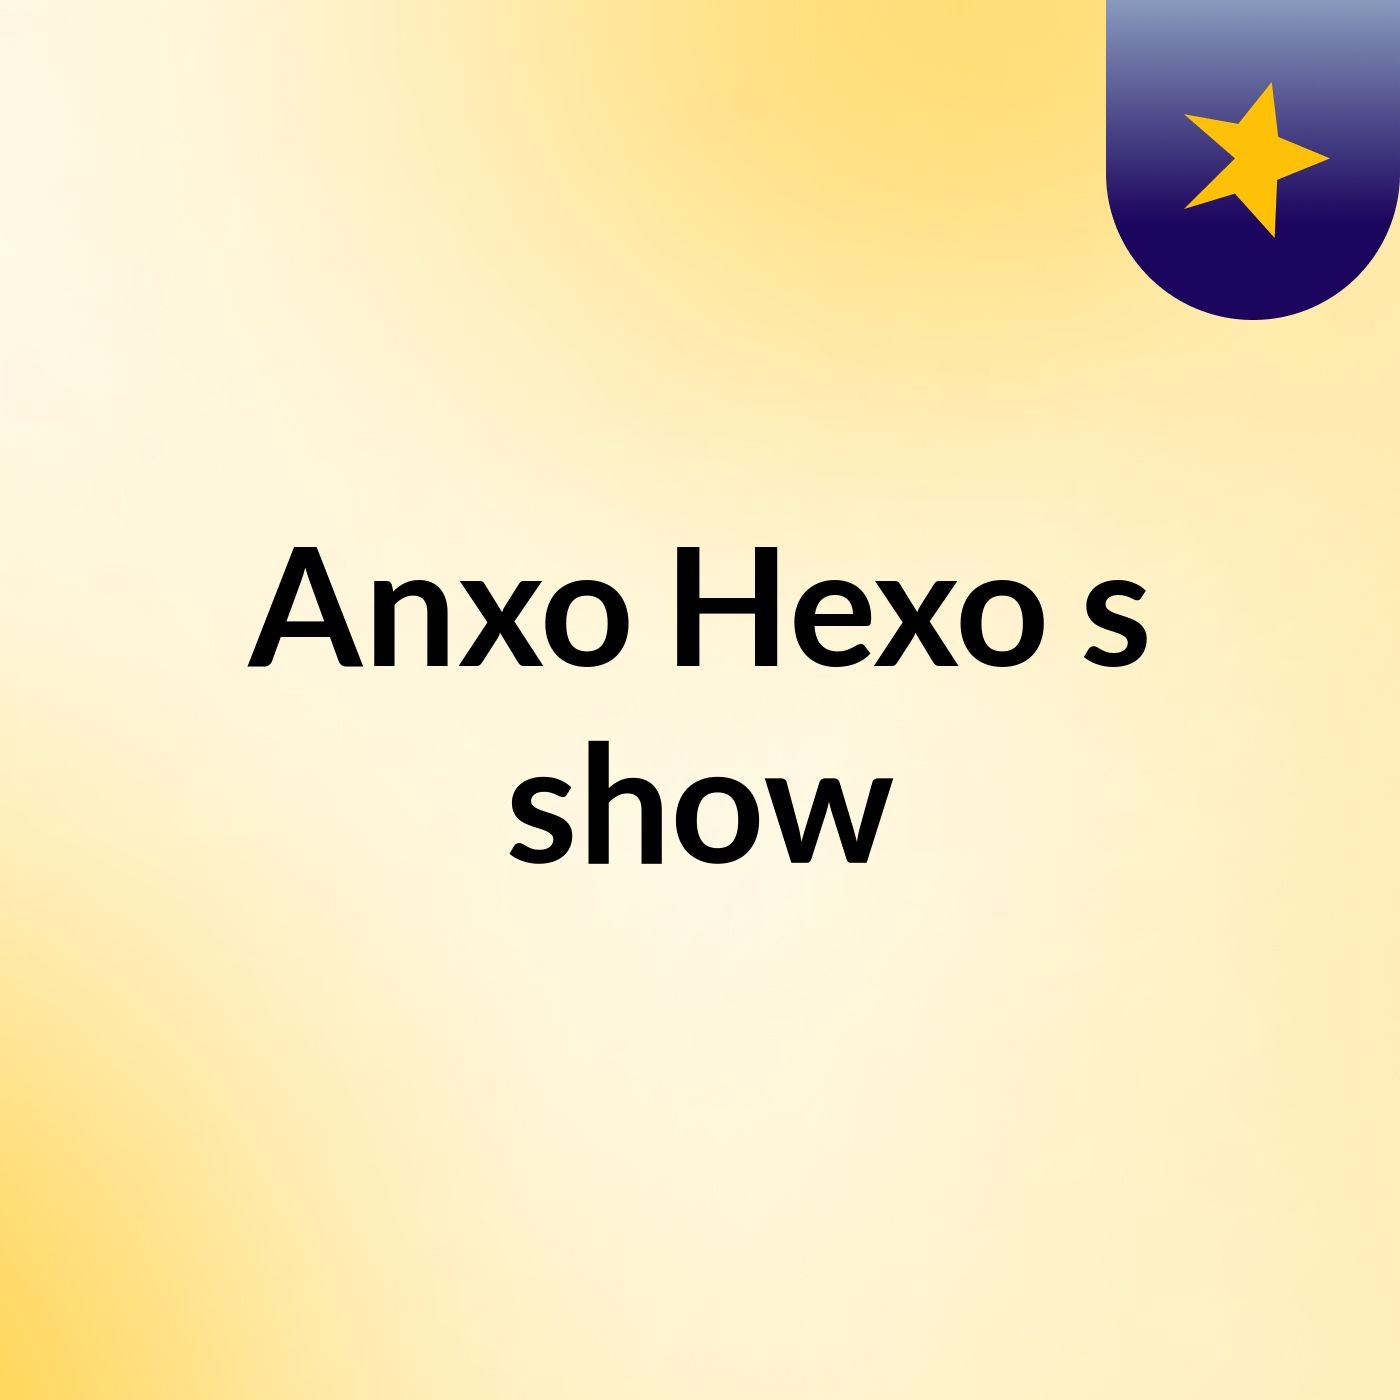 Anxo Hexo's show